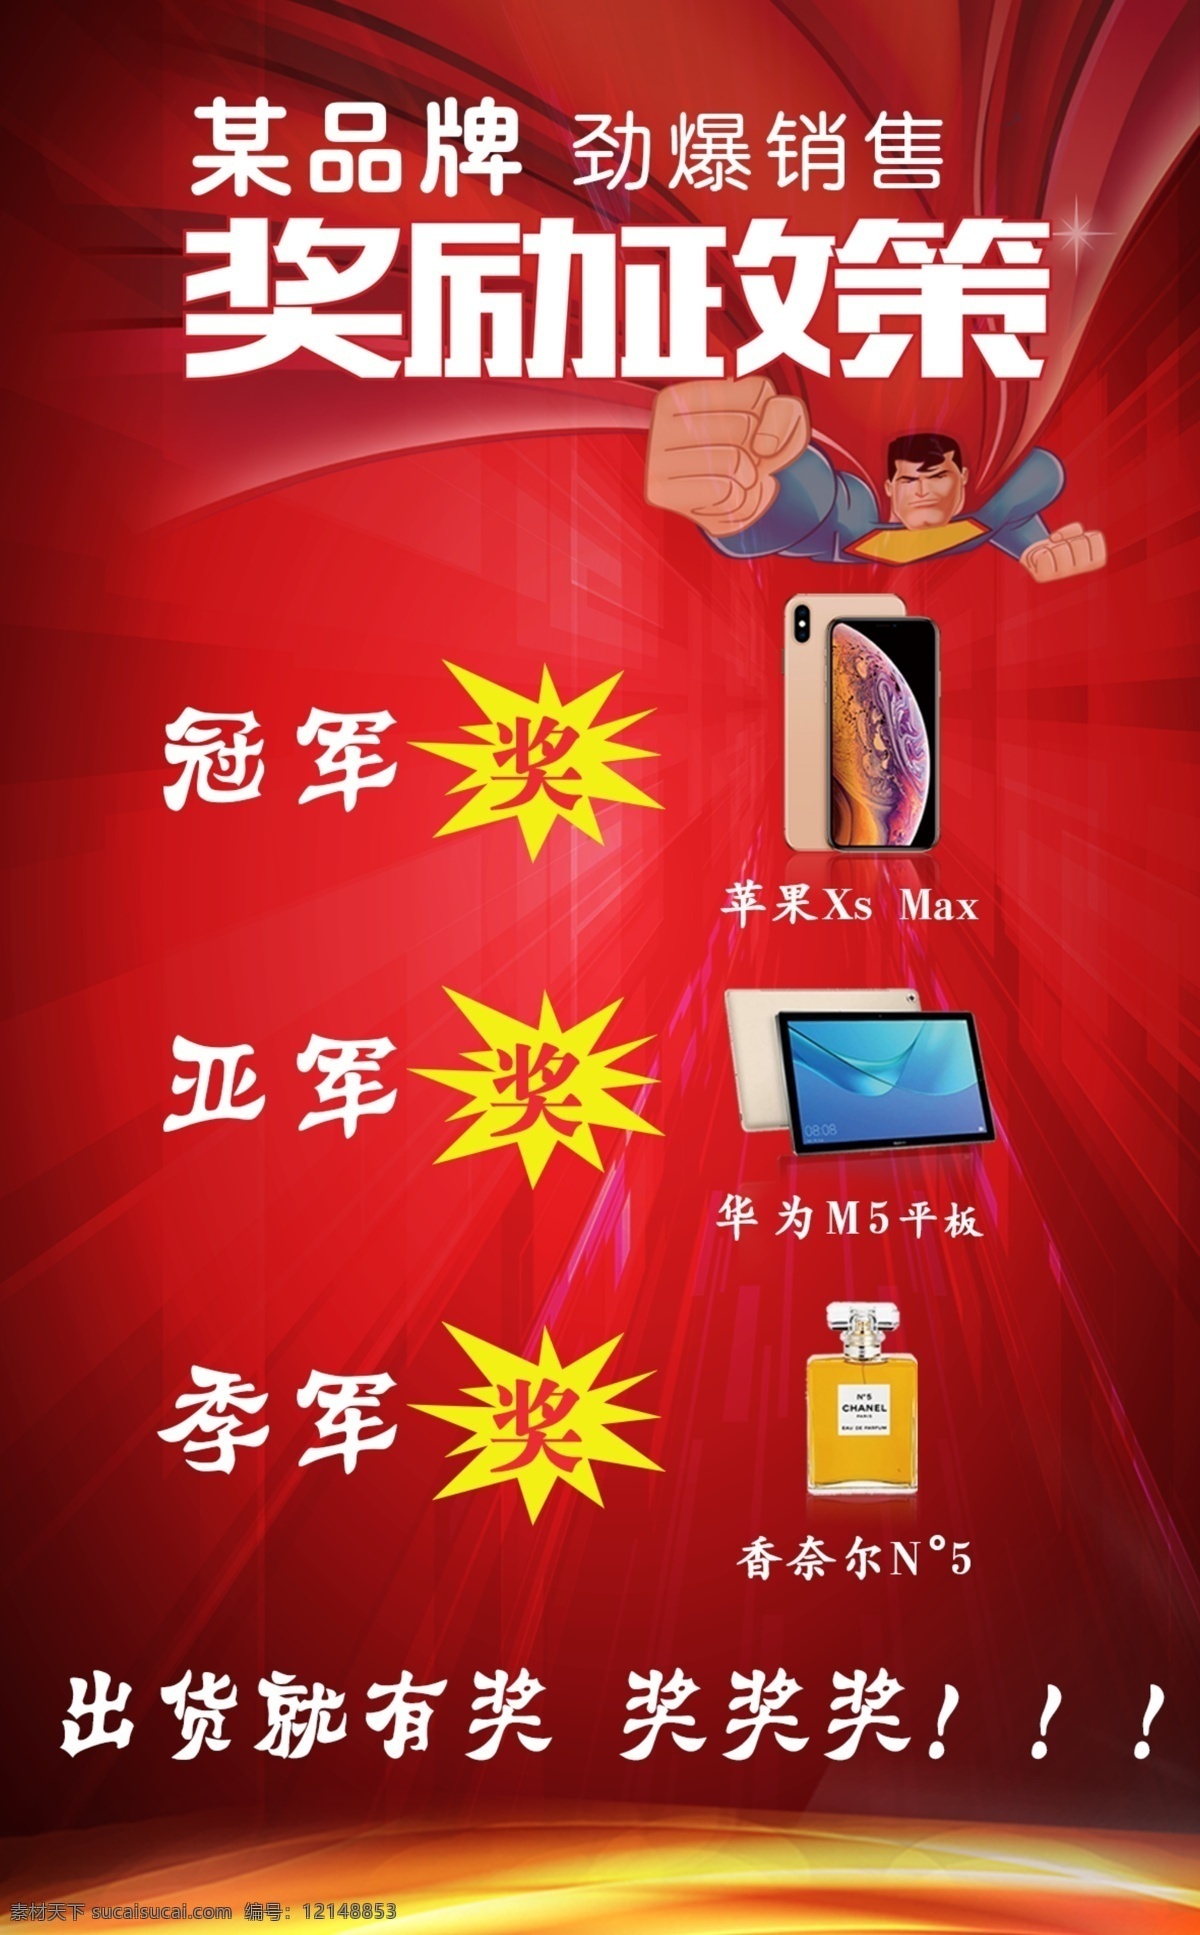 销售奖励 奖励 手机 平板电脑 红色背景 超人 分层